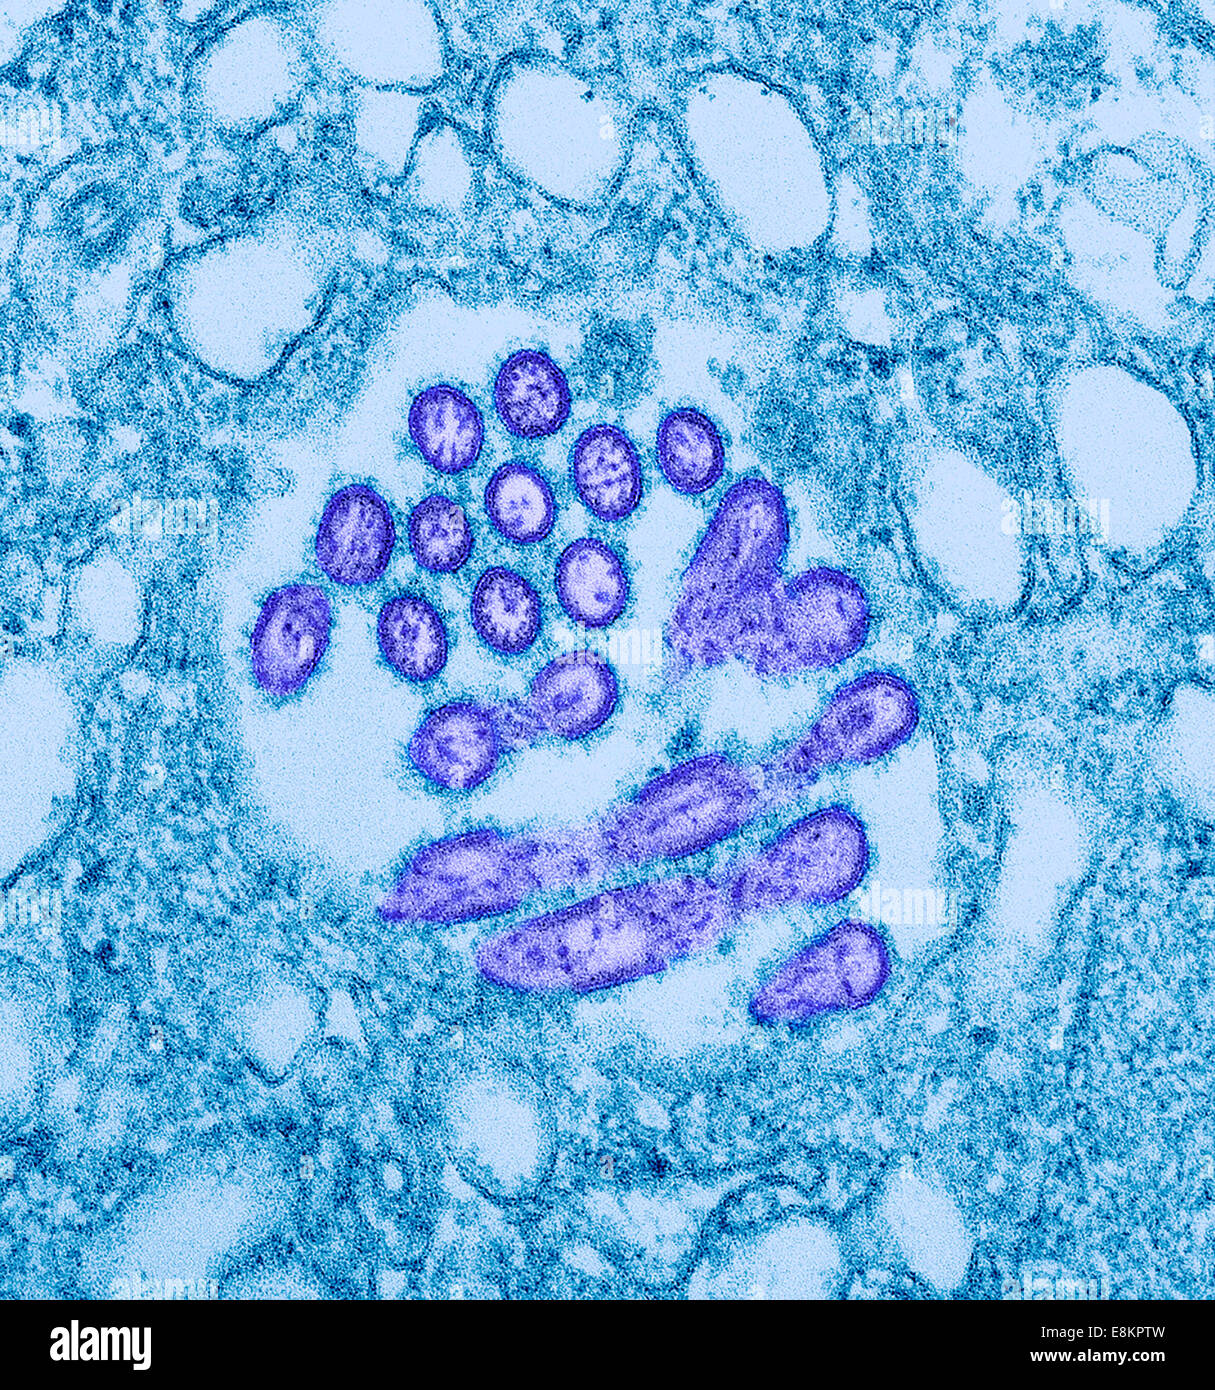 Questo colorizzato micrografia elettronica a trasmissione (TEM) hanno rivelato la presenza di un numero di nuovi virus H1N1 i virioni in questo tessuto Foto Stock